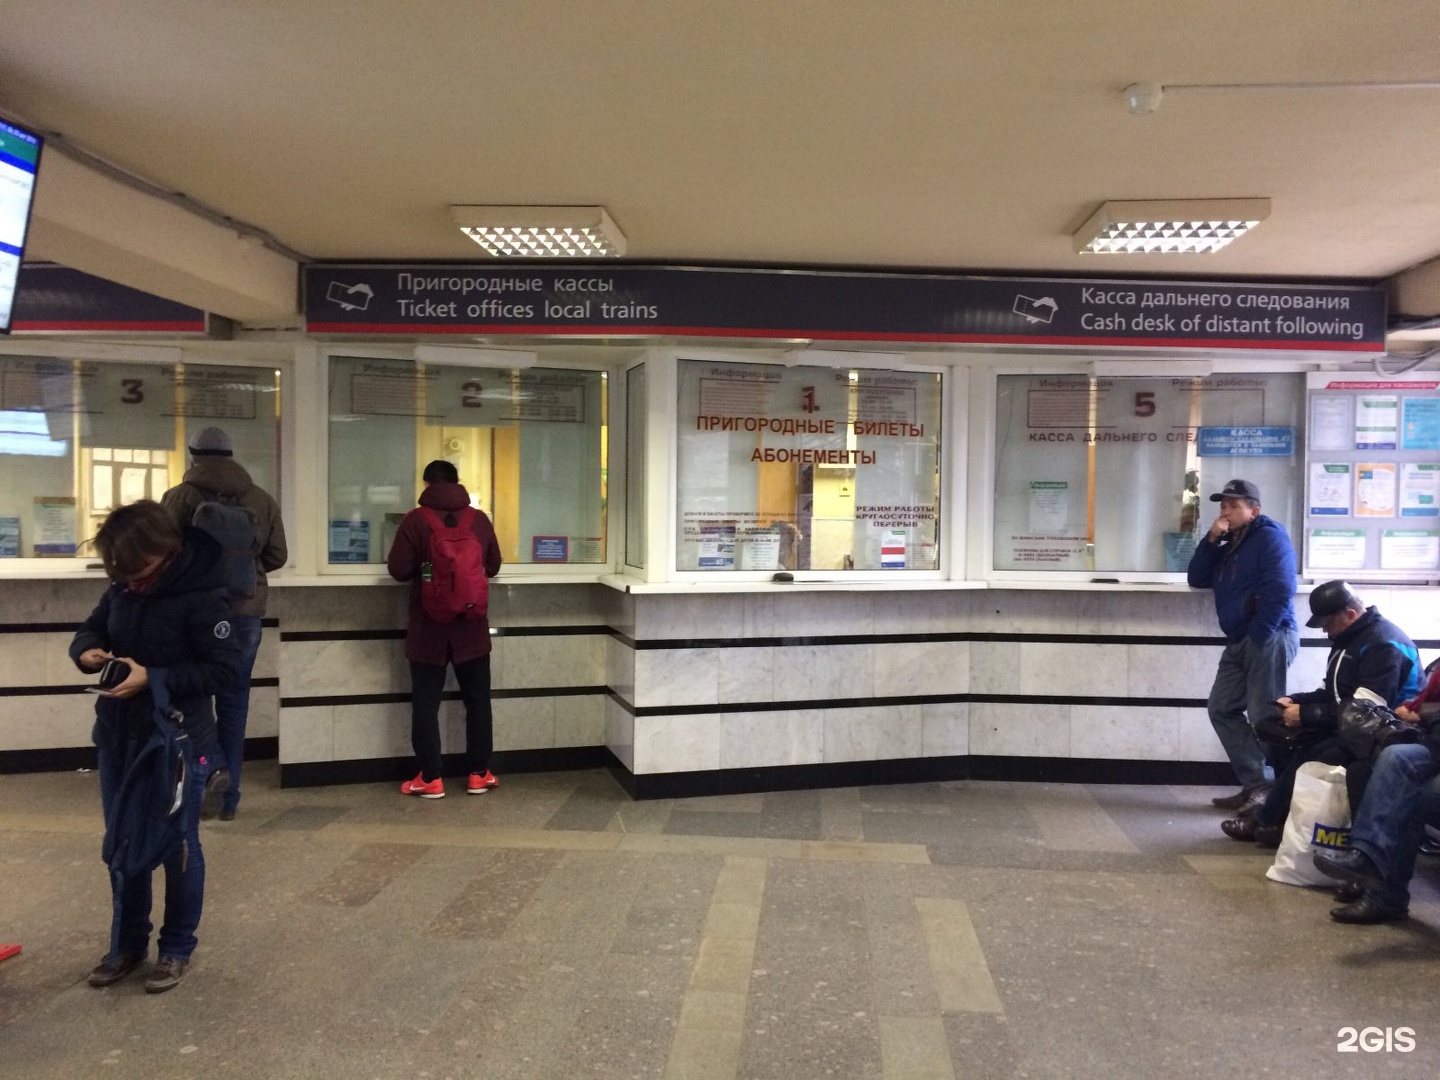 Билетных кассах города. Пригородные кассы ЖД вокзала Новосибирск. Кассы железнодорожных билетов. Касса на вокзале. Билетная касса ЖД.